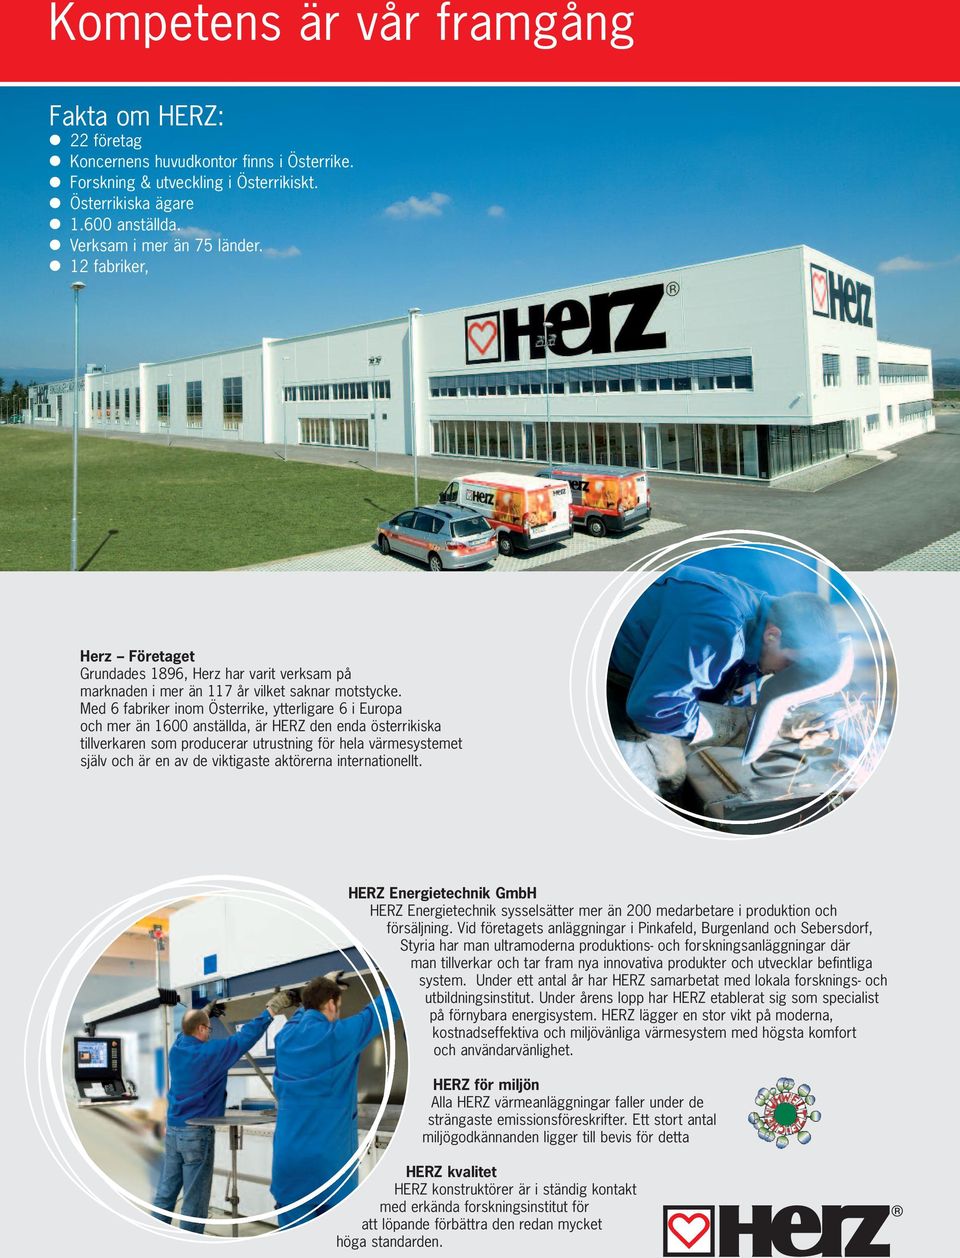 Med 6 fabriker inom Österrike, ytterligare 6 i Europa och mer än 1600 anställda, är HERZ den enda österrikiska tillverkaren som producerar utrustning för hela värmesystemet själv och är en av de